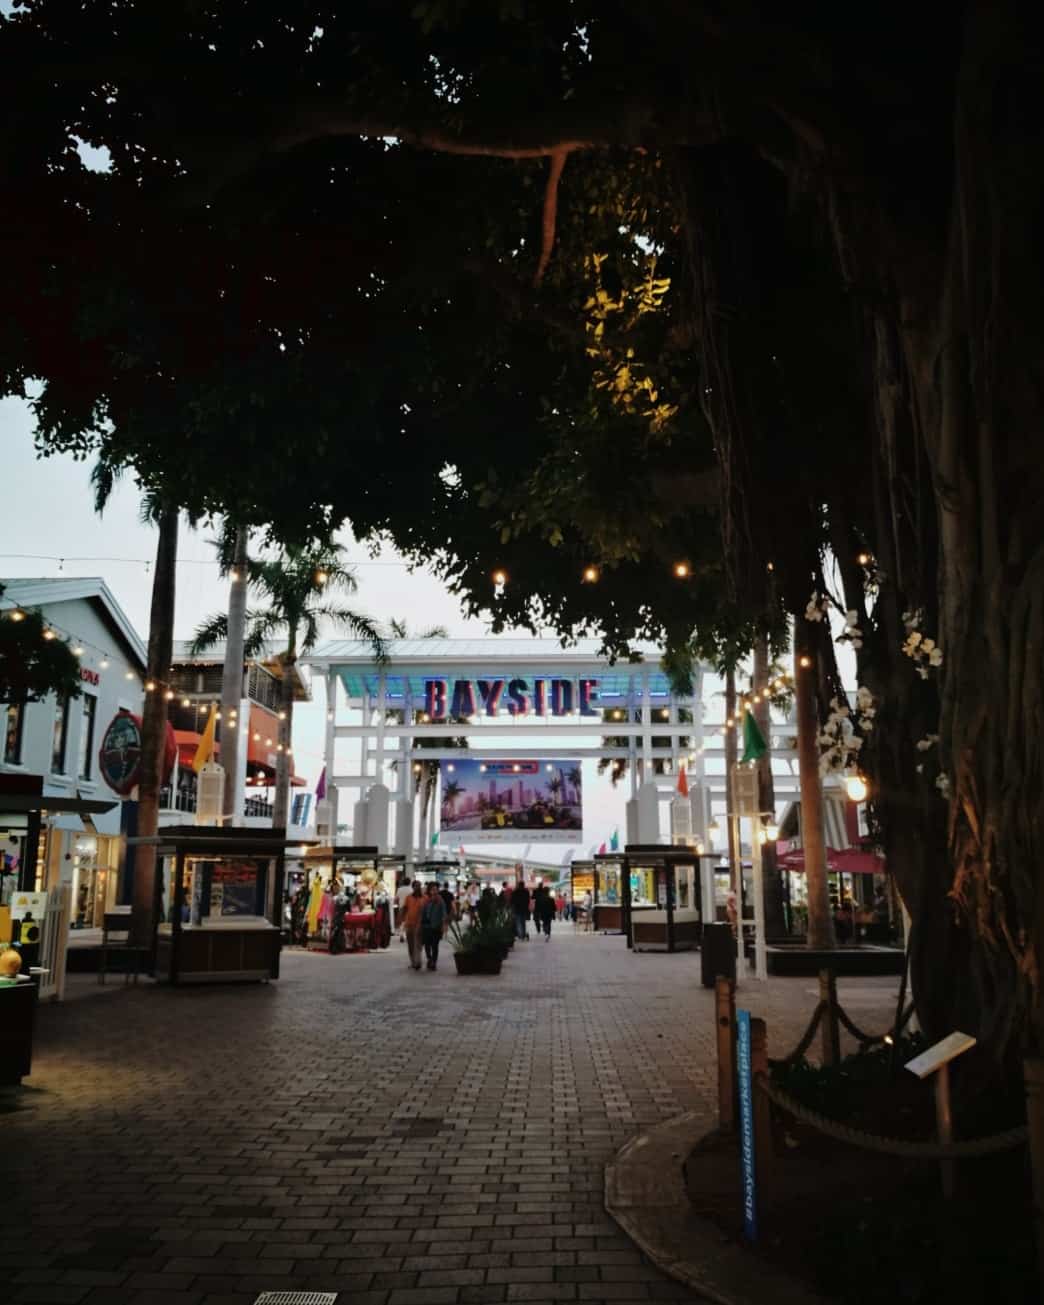 📍Bayside Marketplace, Miami
Bayside est un centre commercial à ciel ouvert. Situé au bord de l'eau car juste à côté du port de Miami, c'est un endroit où venir flâner, manger un morceau, écouter de la musique (concert gratuit quasiment chaque soir) 

#baysidemiami #bayside #baysidemarketplace #shoppingmall #centrecommercial #portofmiami #miami #downtownmiami #biscayneboulevard #miamidade #shoppingtime #beautifuldestinations #usatrip #tourisme #etatsunis #etatsunis🇺🇸 #etatsunisdamerique #port #shoppingcenter #outdoorliving